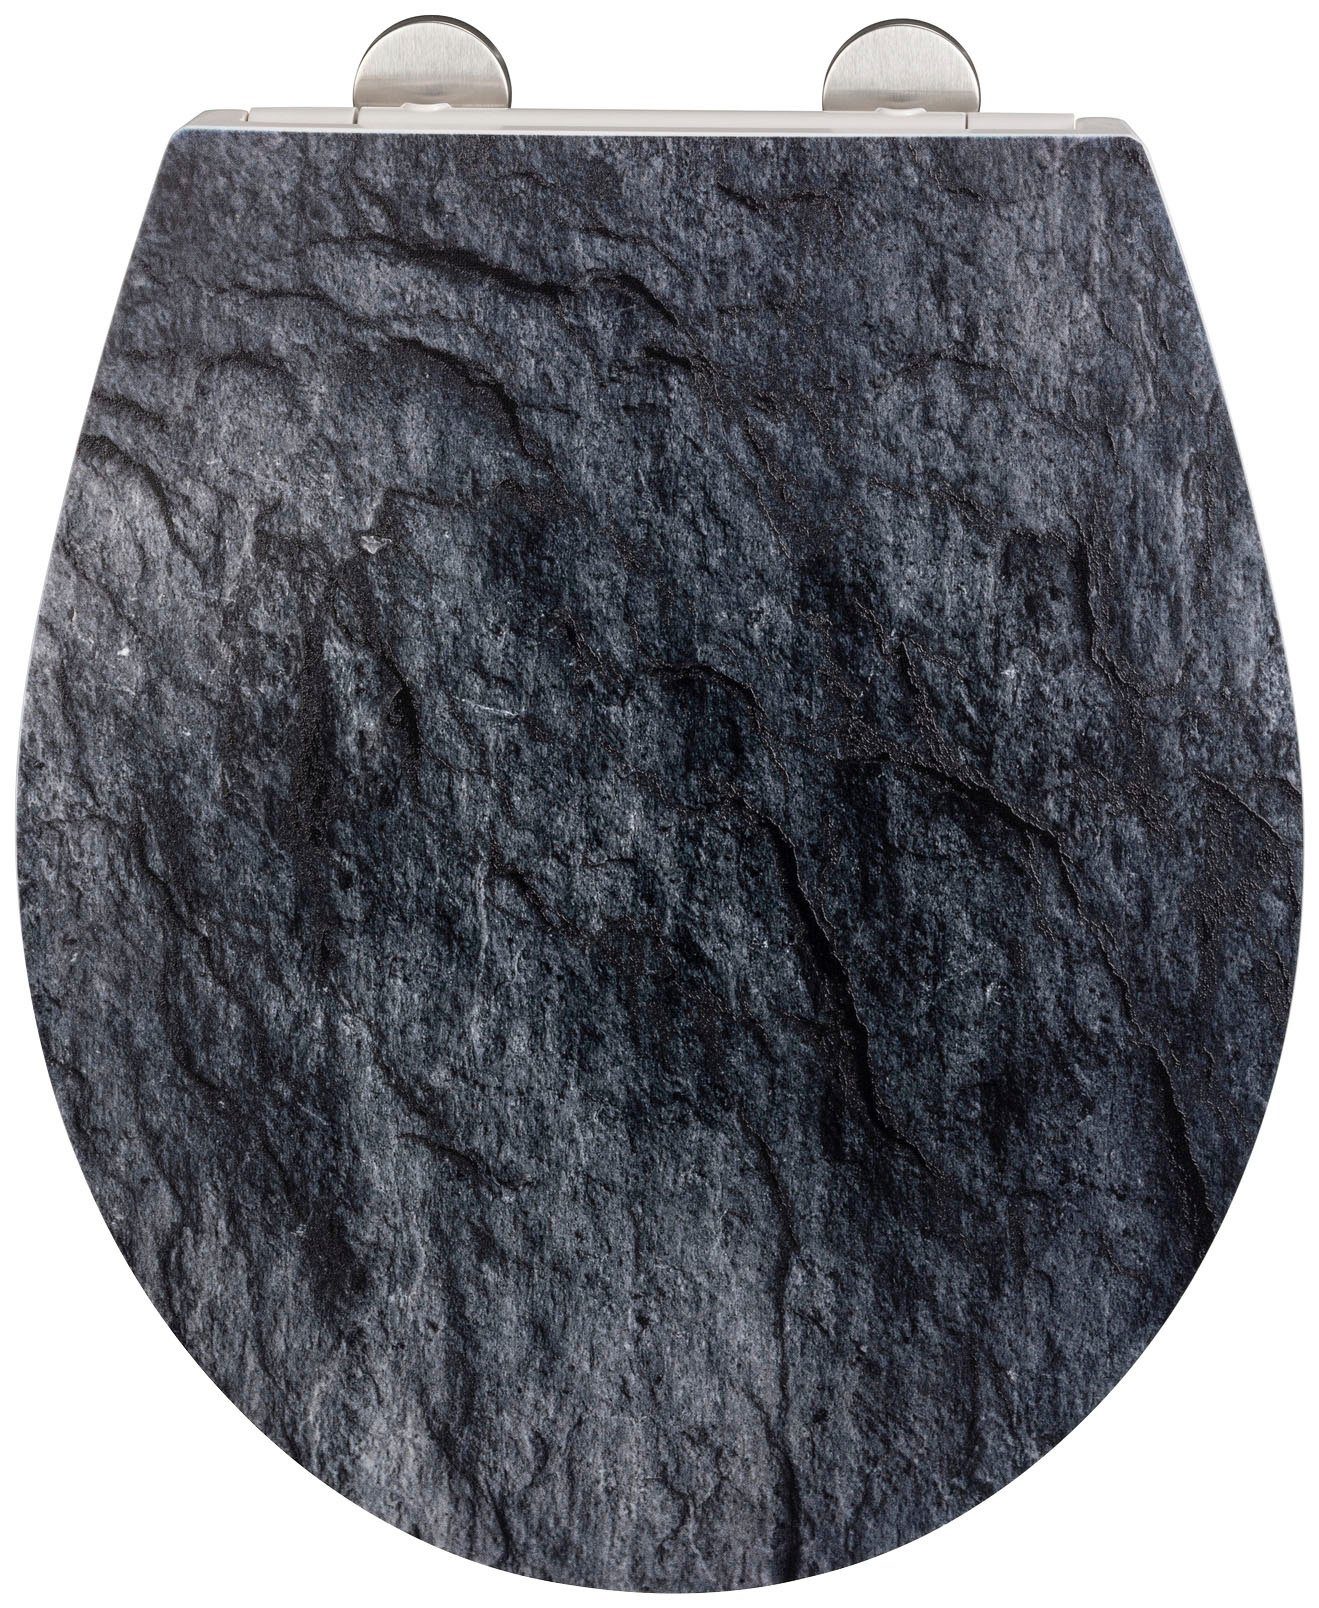 WENKO WC-Sitz Slate Rock, mit Relief, aus antibakteriellem Duroplast